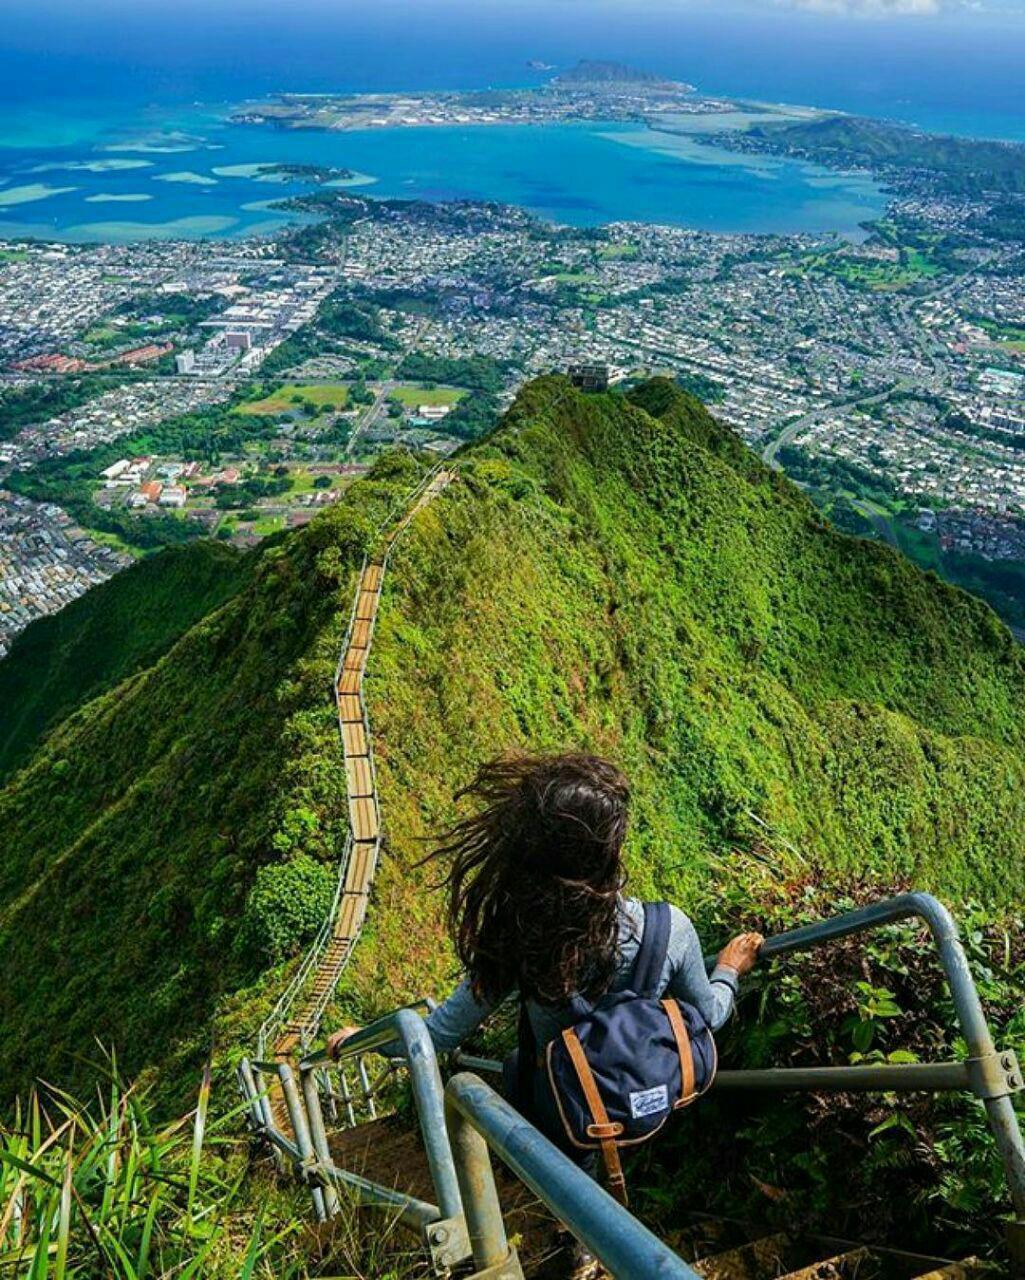 پله_های_هایکو #هاوایی_امریکا  در مسیری هیجان انگیز رو به بهشت قدم خواهید گذاشت. پله هایی که از جنگل های بکر و صخره های بلند عبور می کند و شاید ش **abdolla**